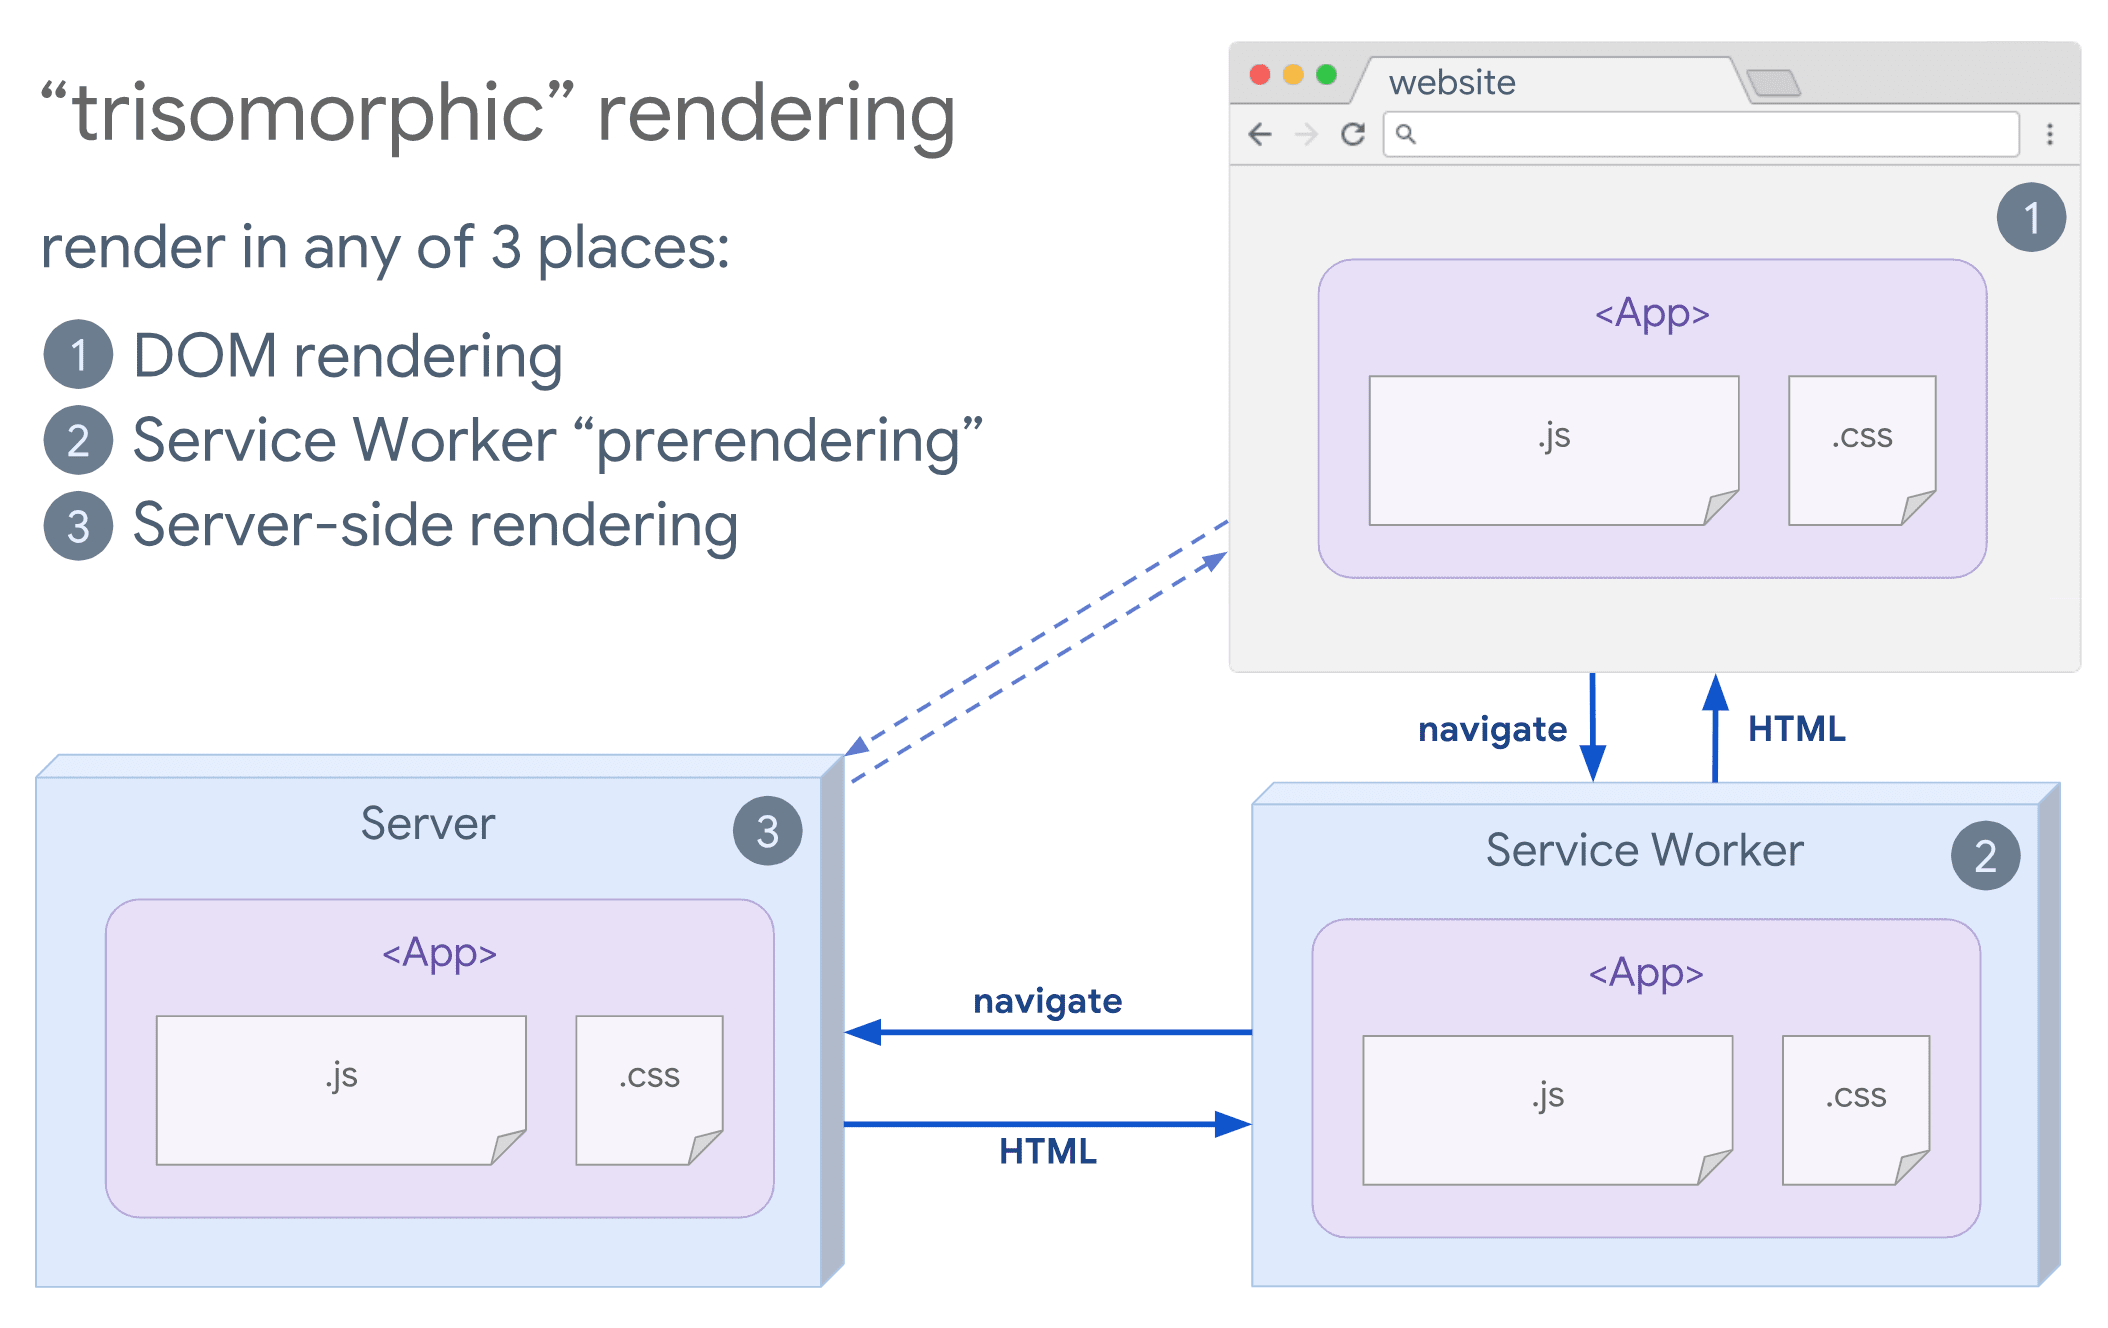 Diagramma del rendering trisomorfico, che mostra un browser e un service worker che comunicano con il server.